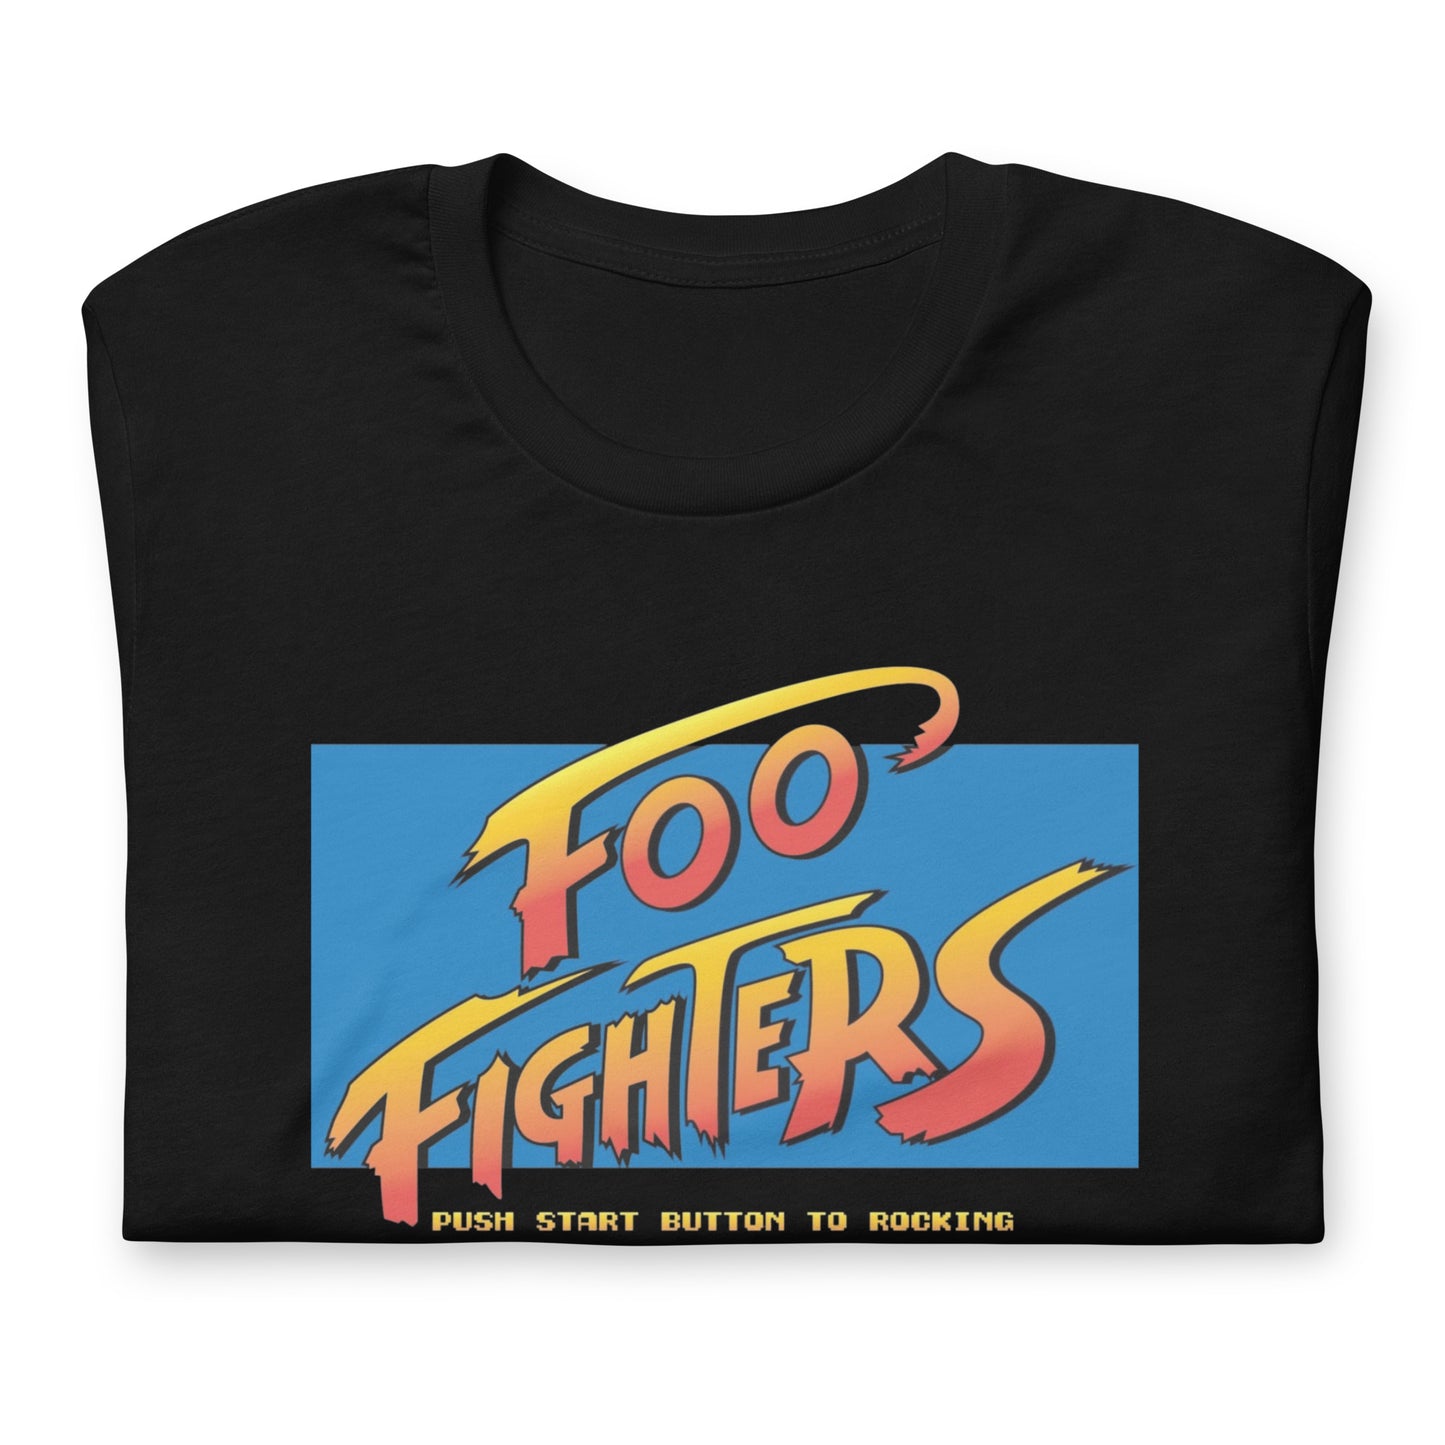 Playera Street Foo Fighters la encuentras en Superstar, vístete como un verdadero #Rockstar y encuentra tu estilo en nuestra tienda Online.